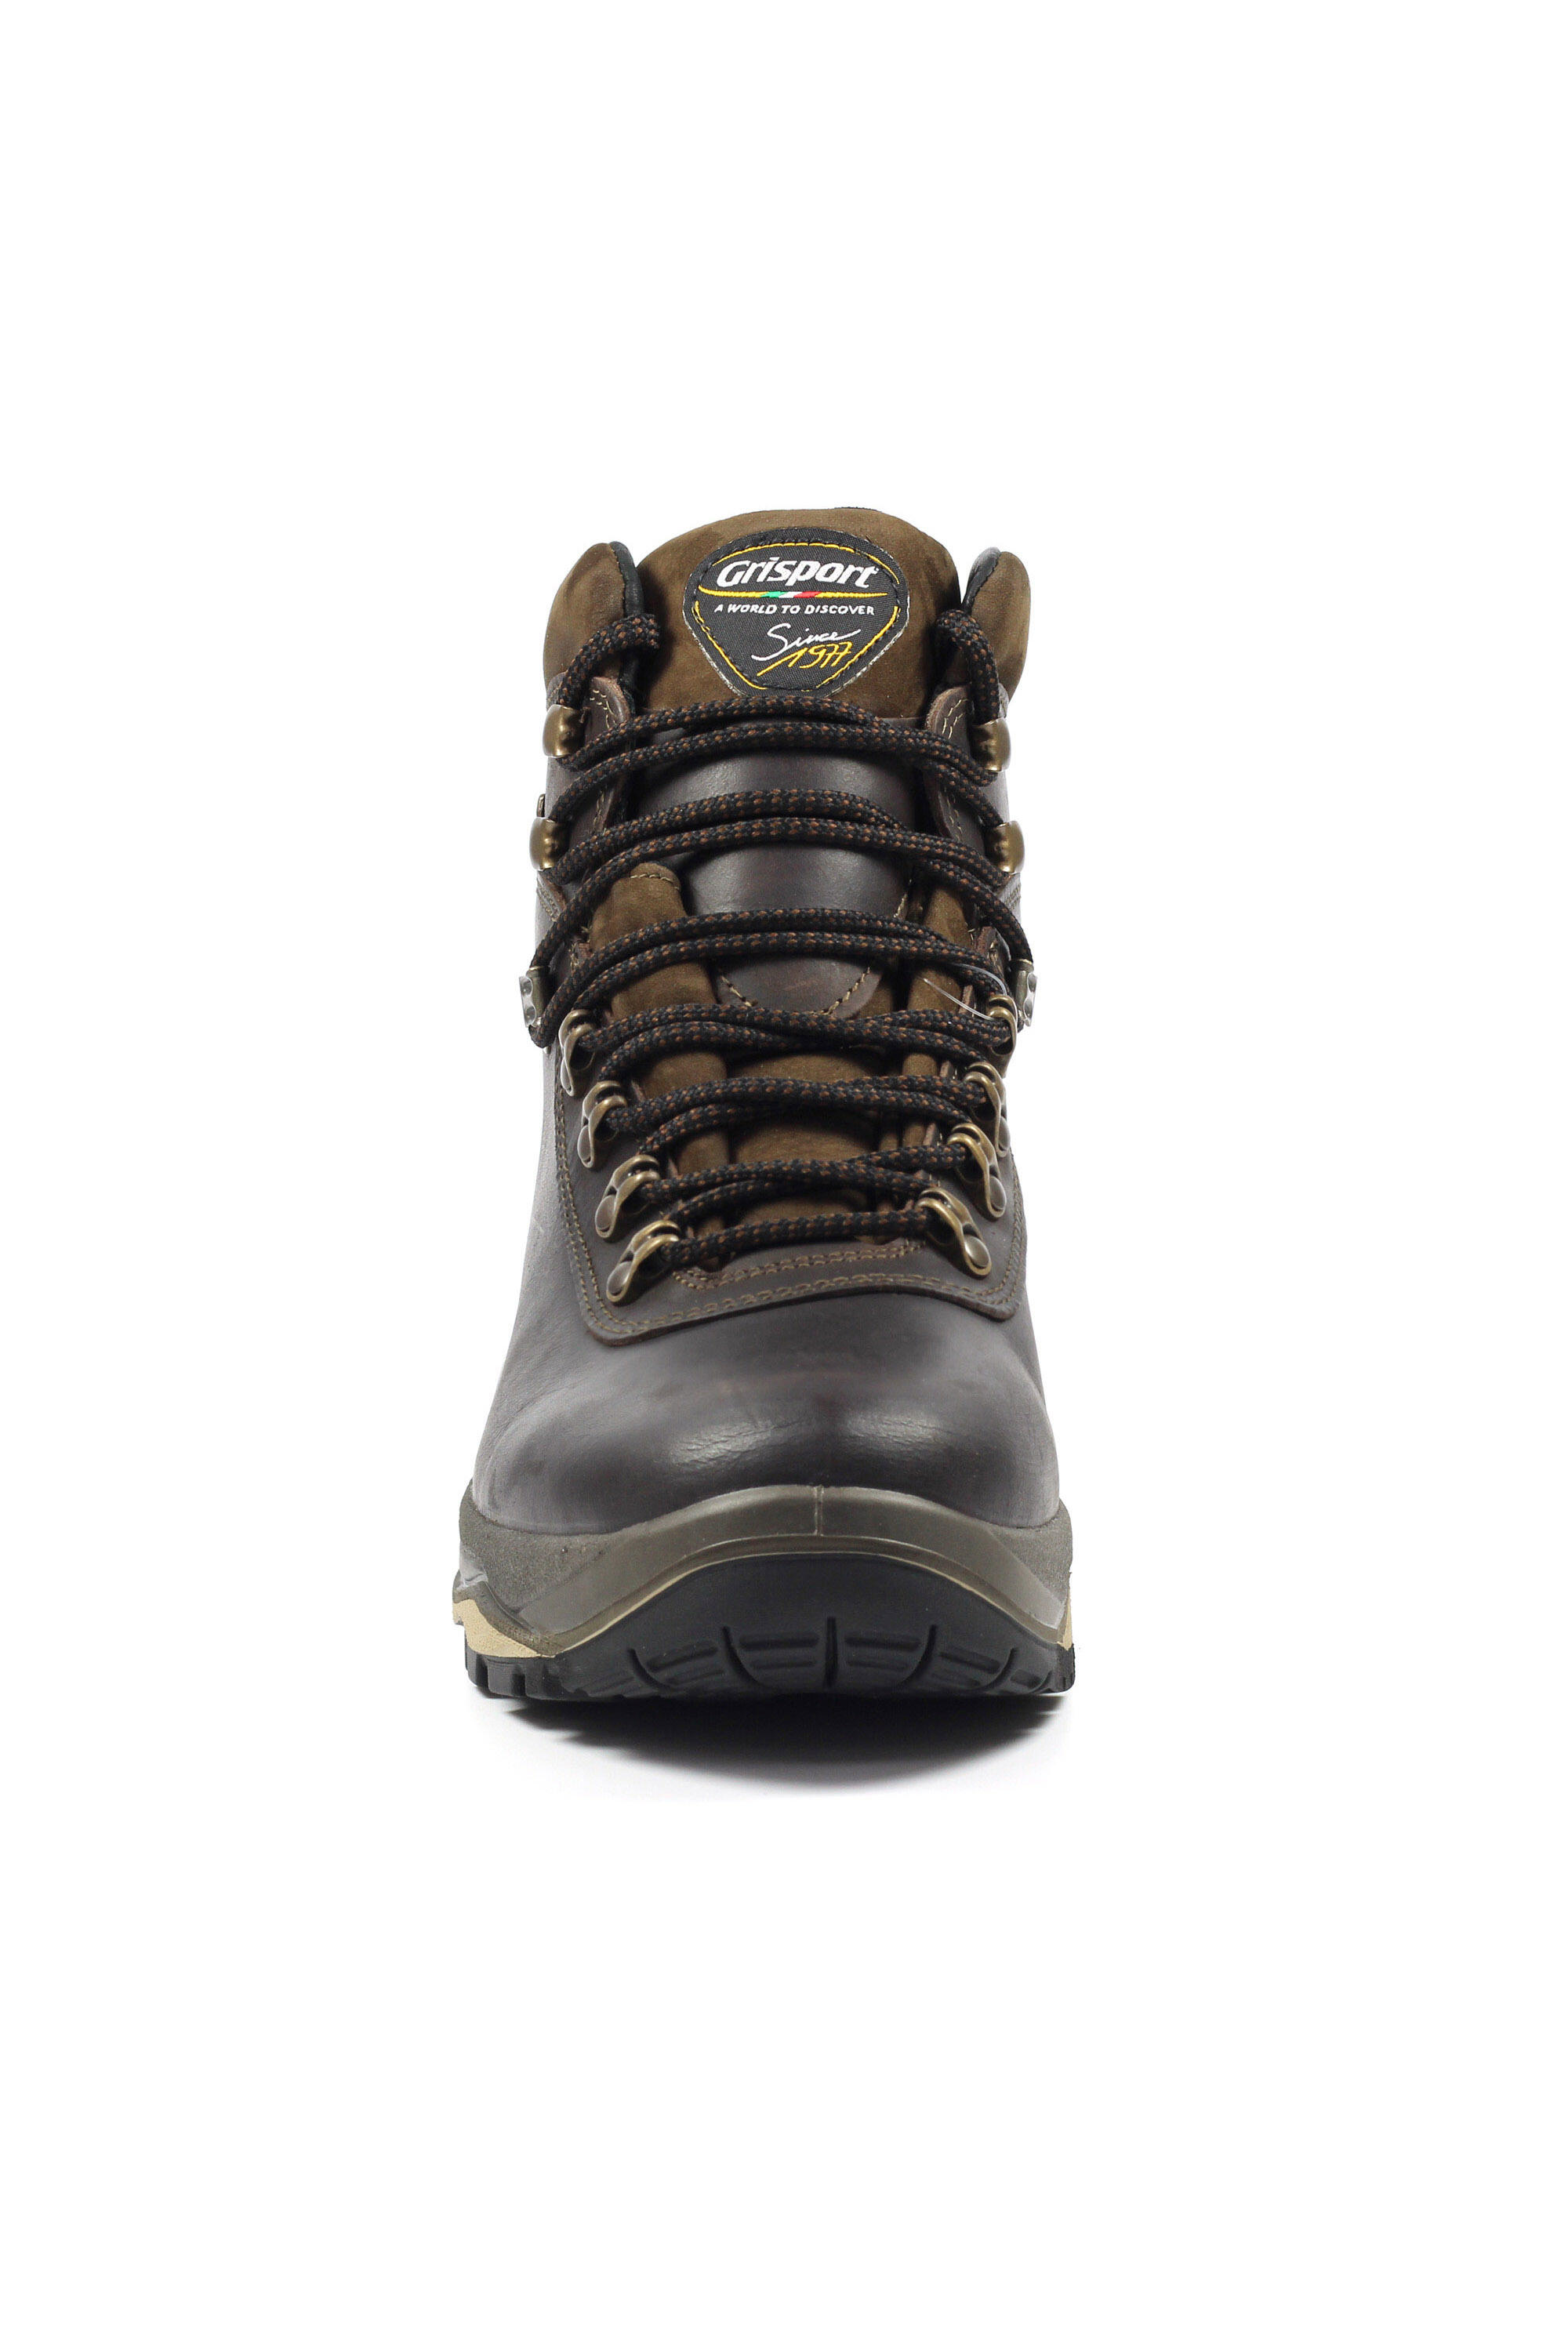 Evolution Brown Waterproof Hiking Boot 4/5